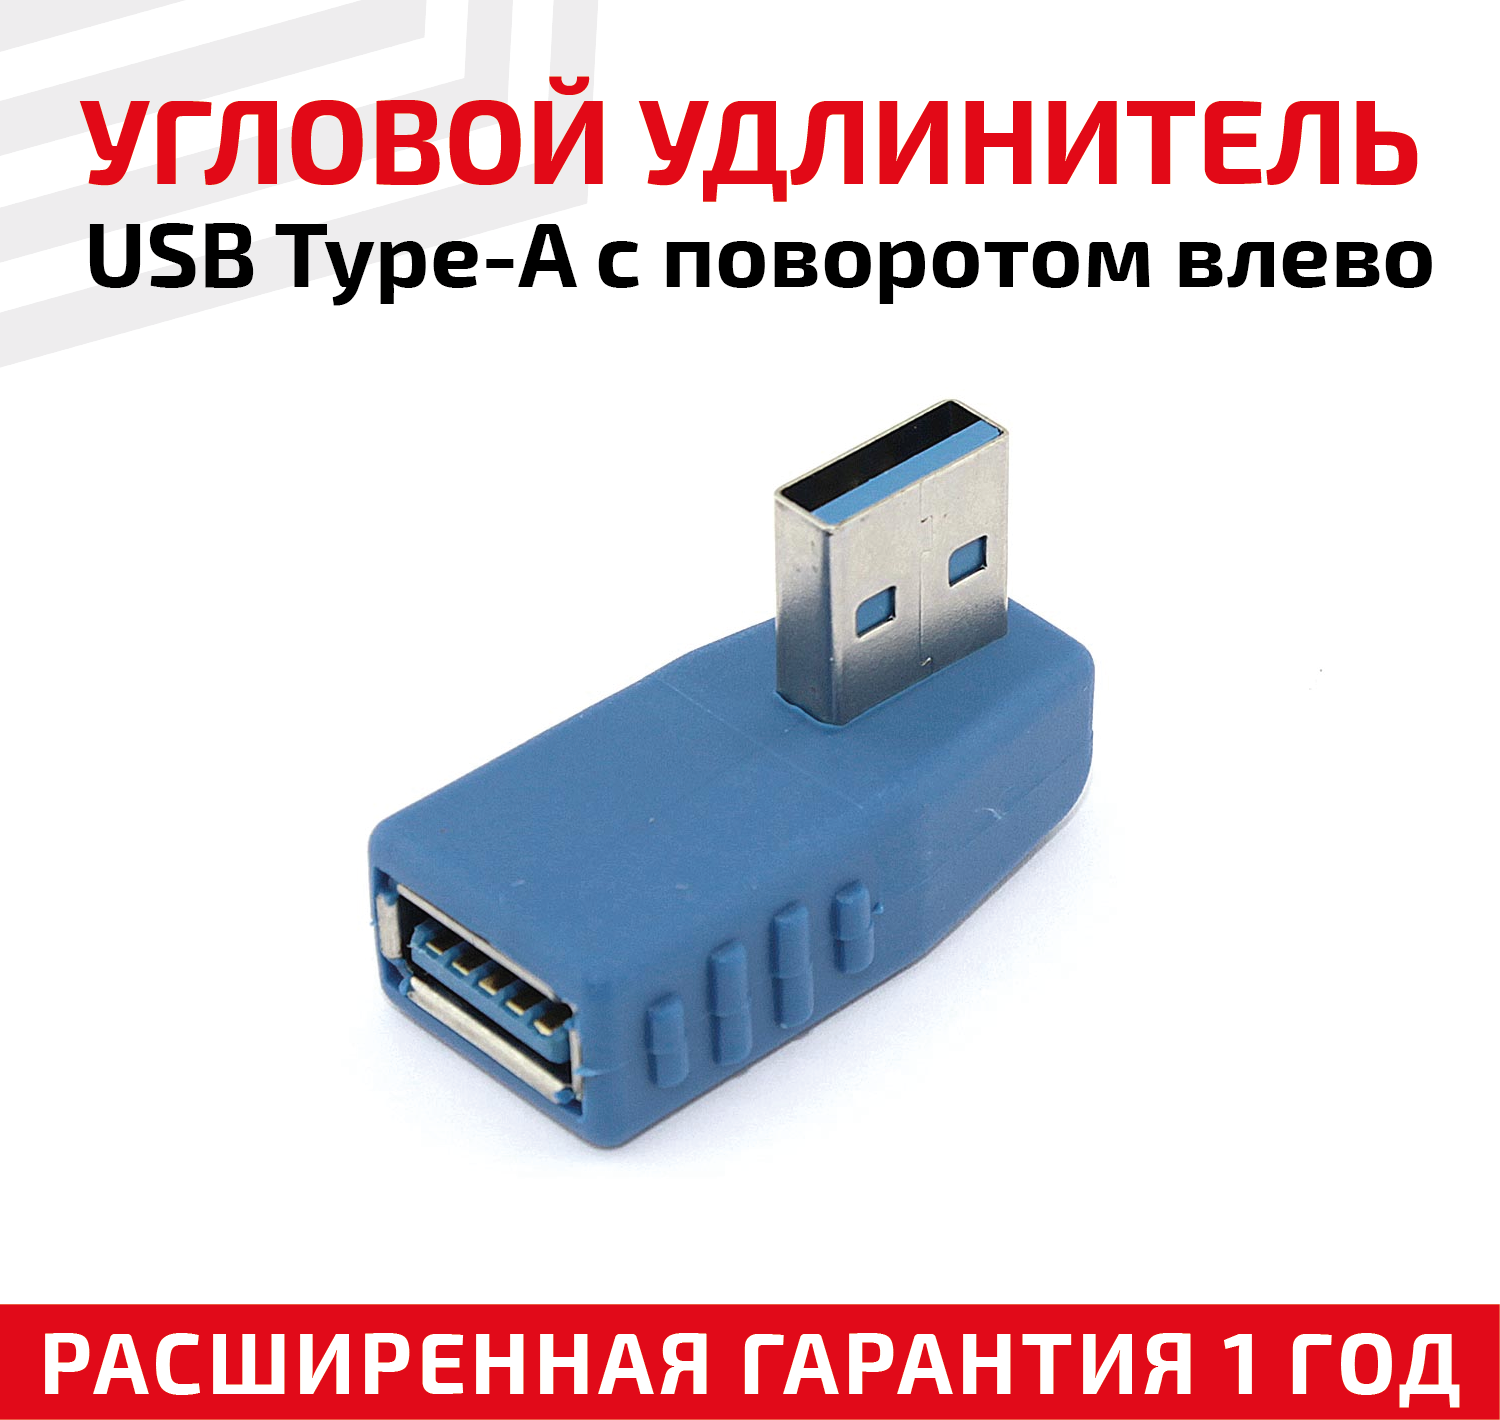 Угловой адаптер-переходник (сетевой адаптер) USB 3.0 Type-A для компьютера ноутбука с поворотом влево